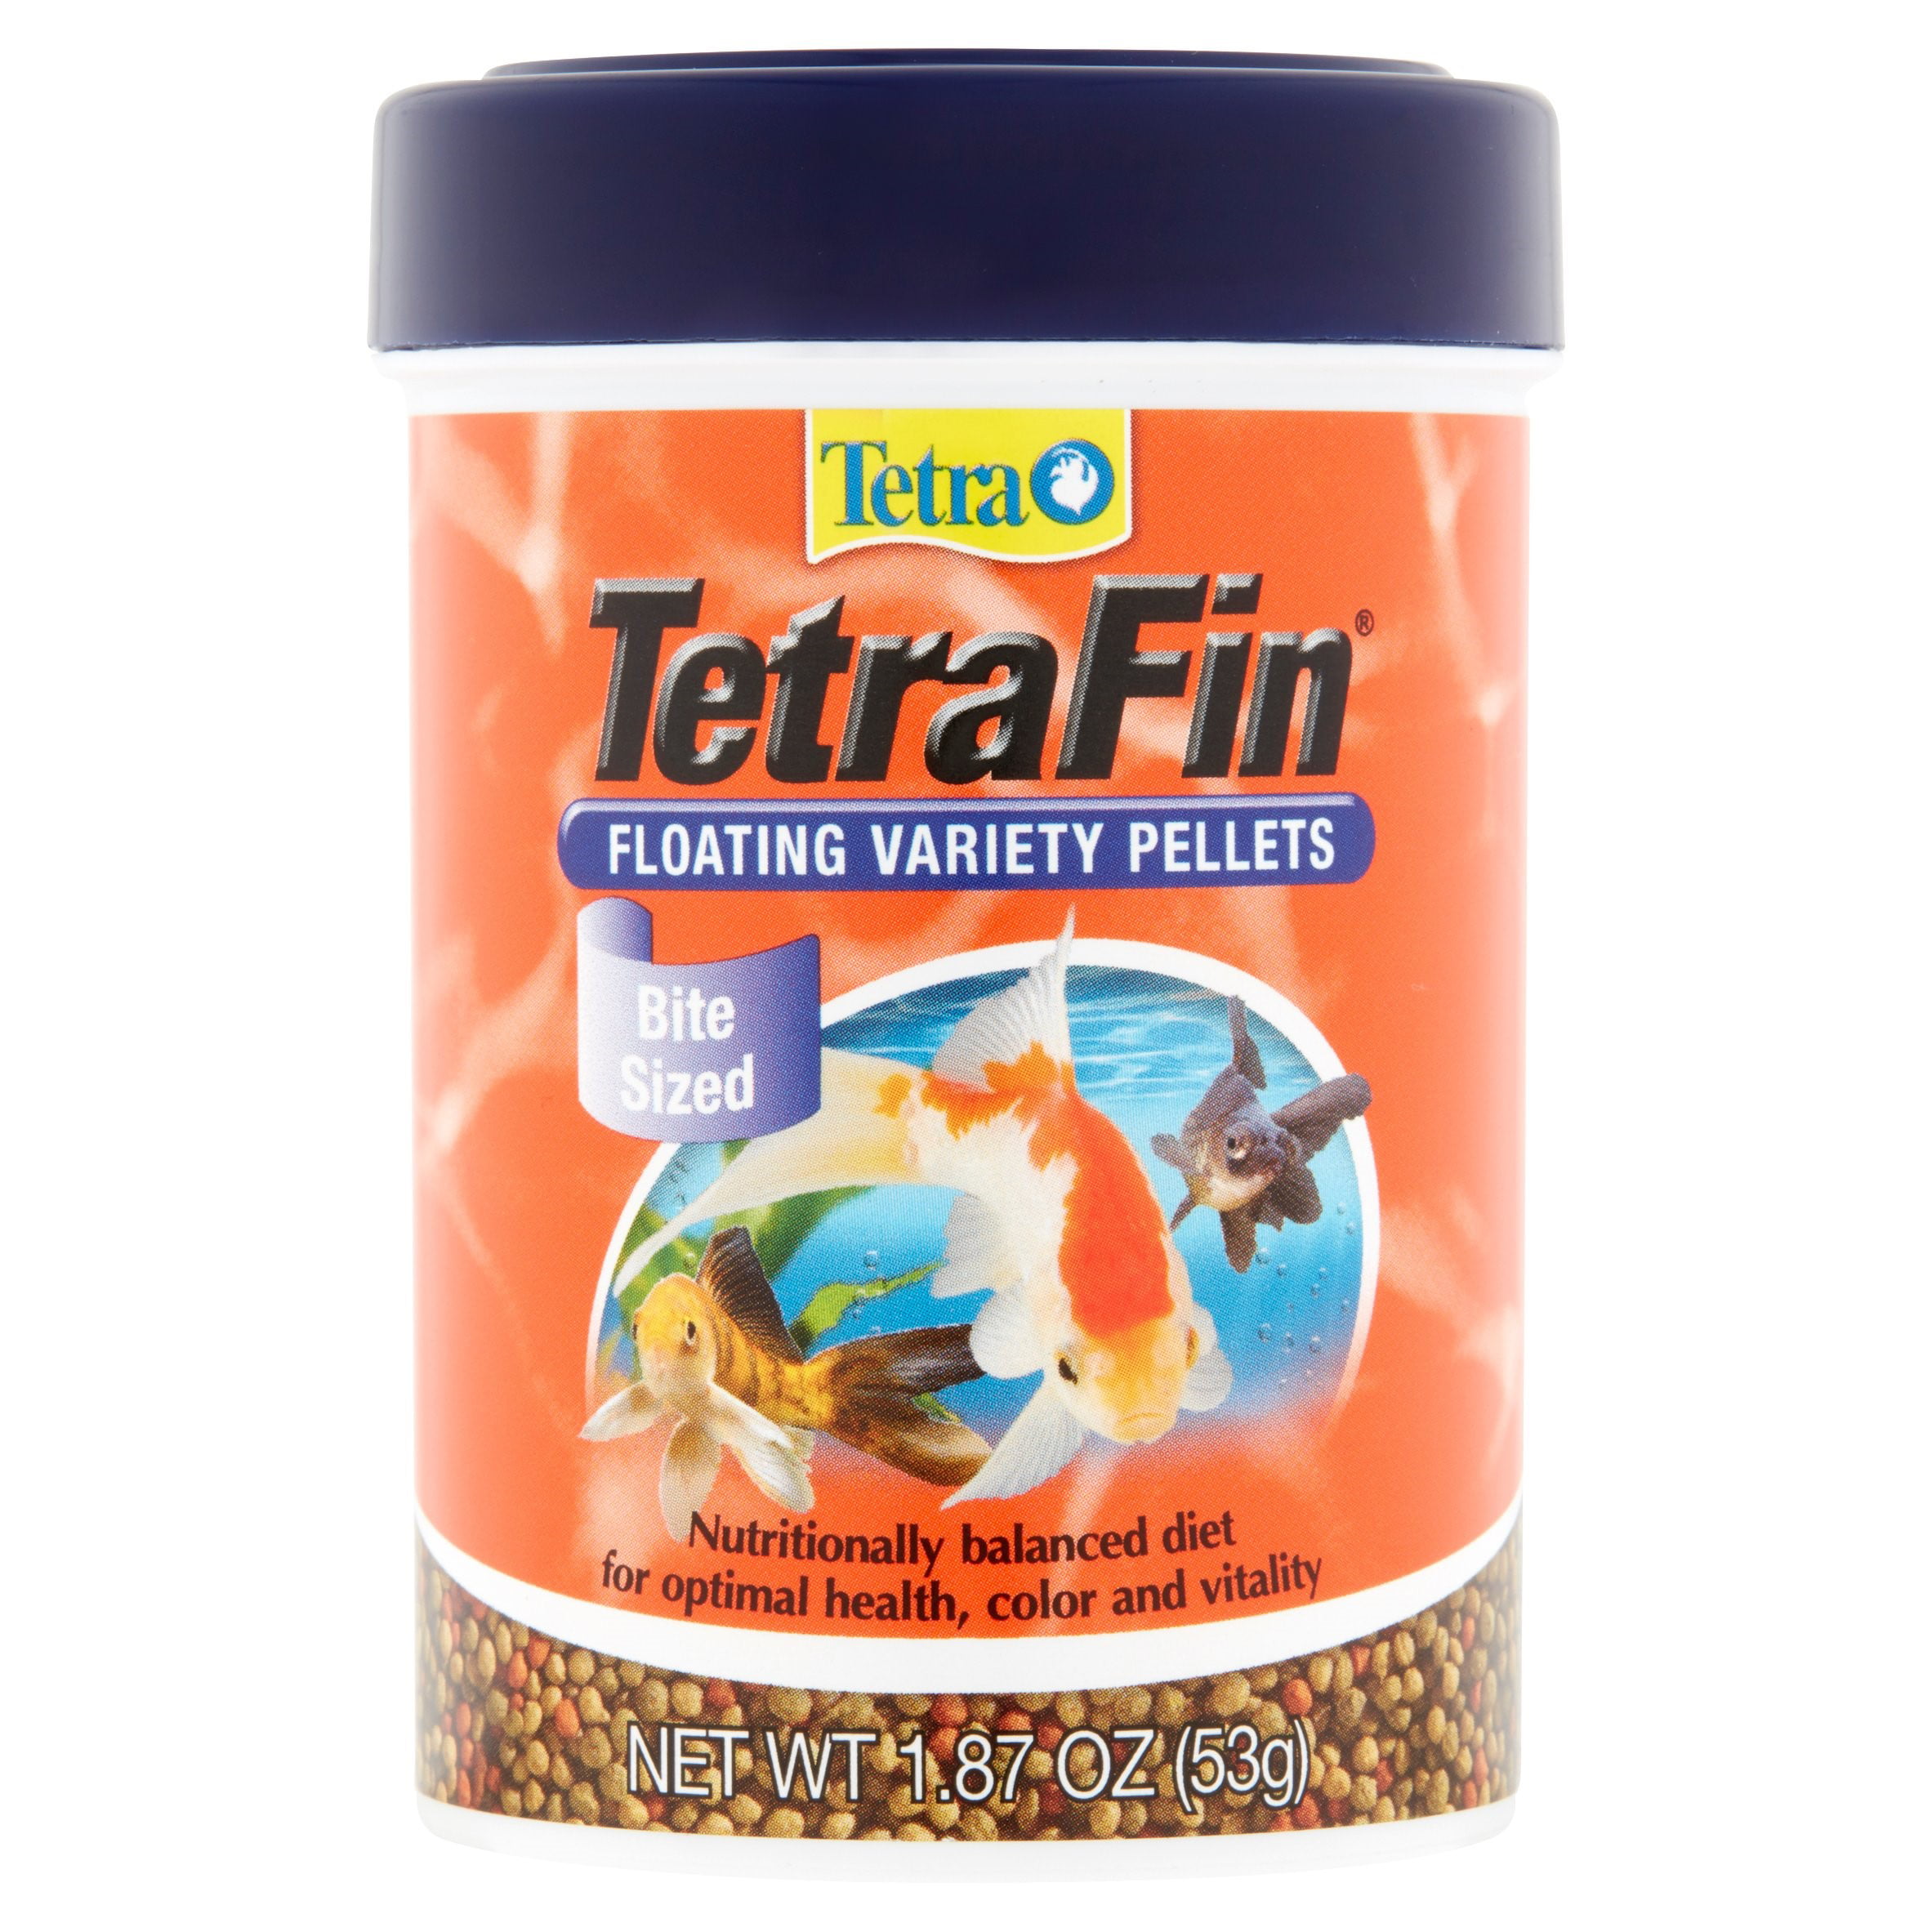 tetra goldfish granules